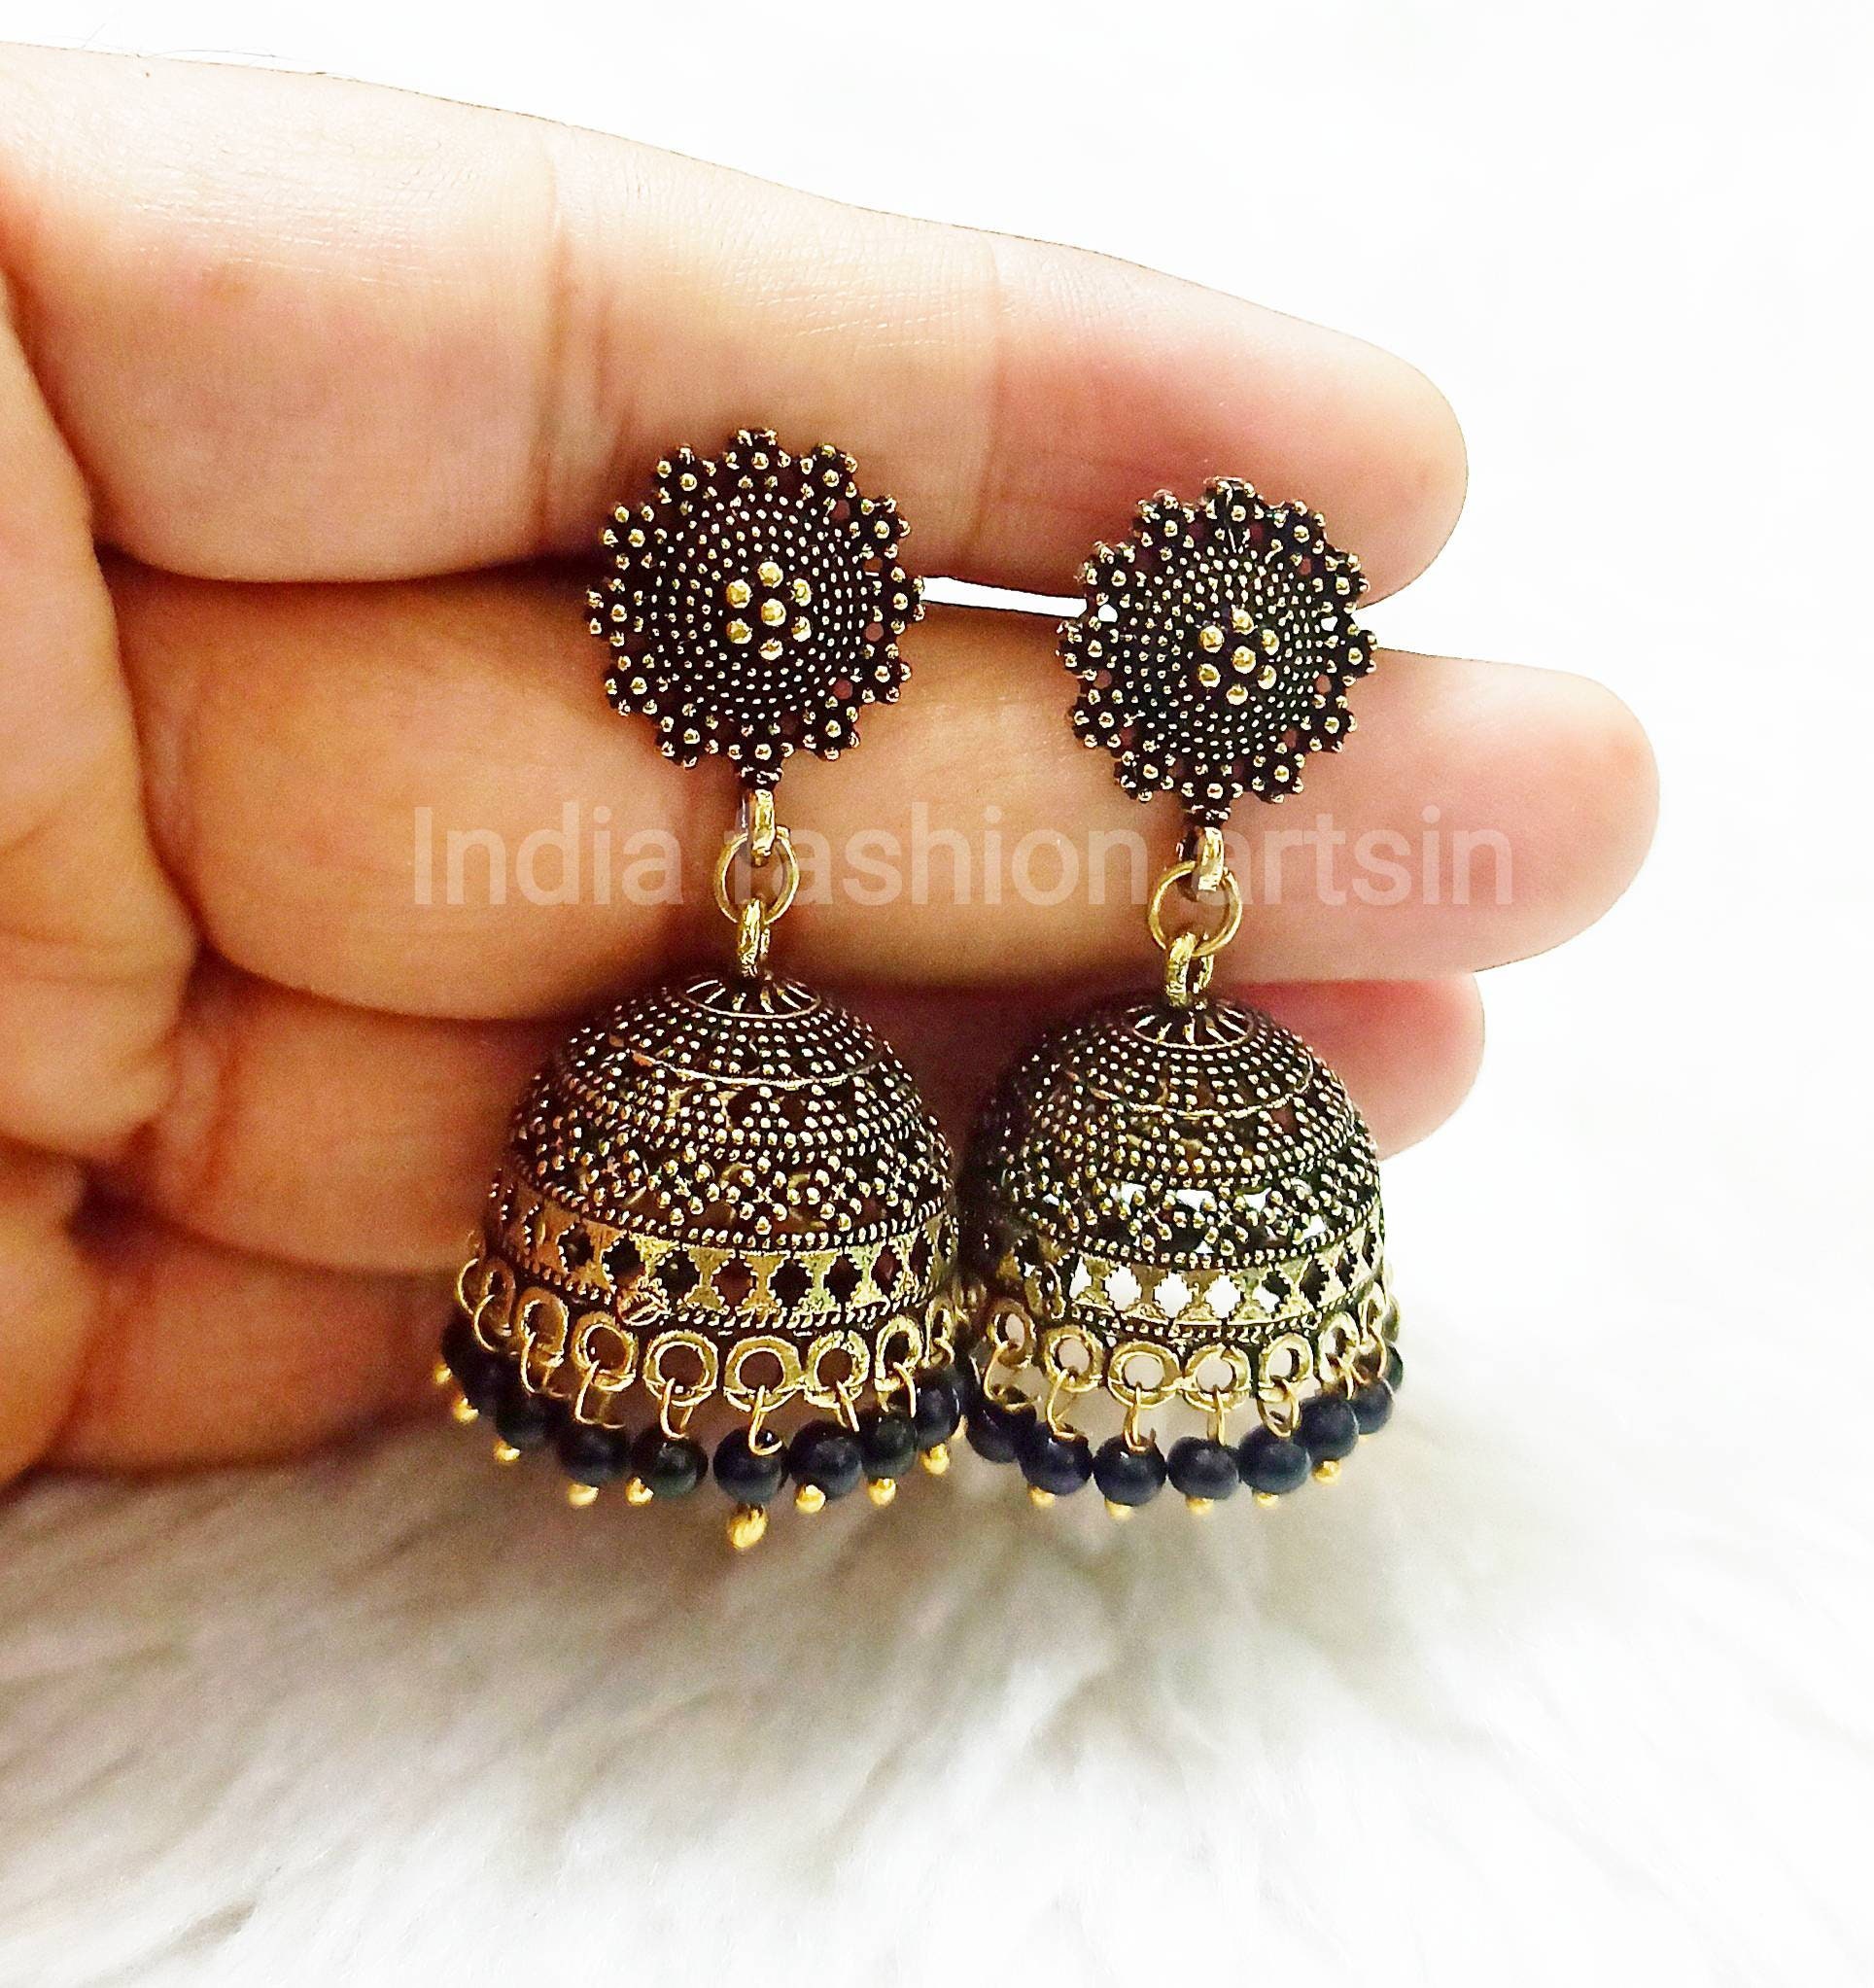 Copper Earrings - Buy Copper Earrings online in India